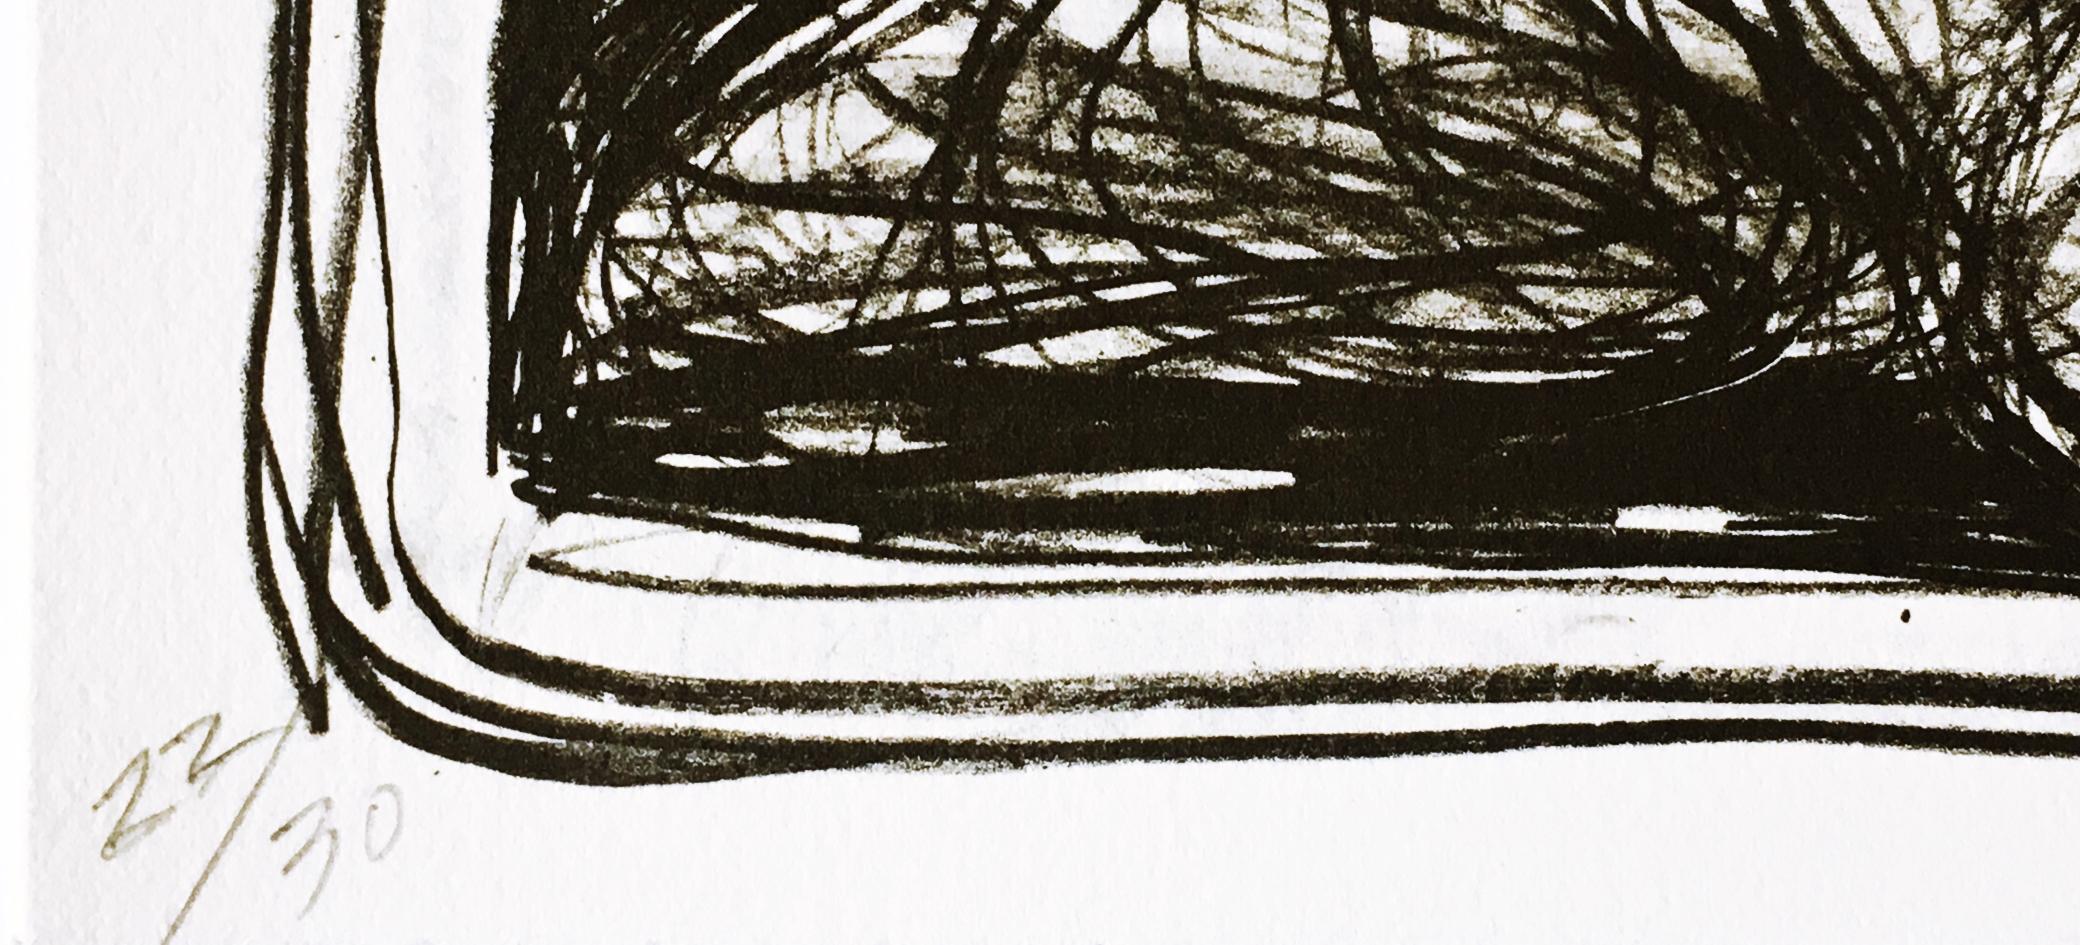 Edward Giobbi
In einer Landschaft #1, aus Long Point Gallery Portfolio, 1988
Lithographie auf Papier mit Büttenrand
Handsigniert, nummeriert 22/30, datiert und betitelt auf der Vorderseite unten
15 × 22 Zoll
Ungerahmt
Handsigniert, nummeriert,